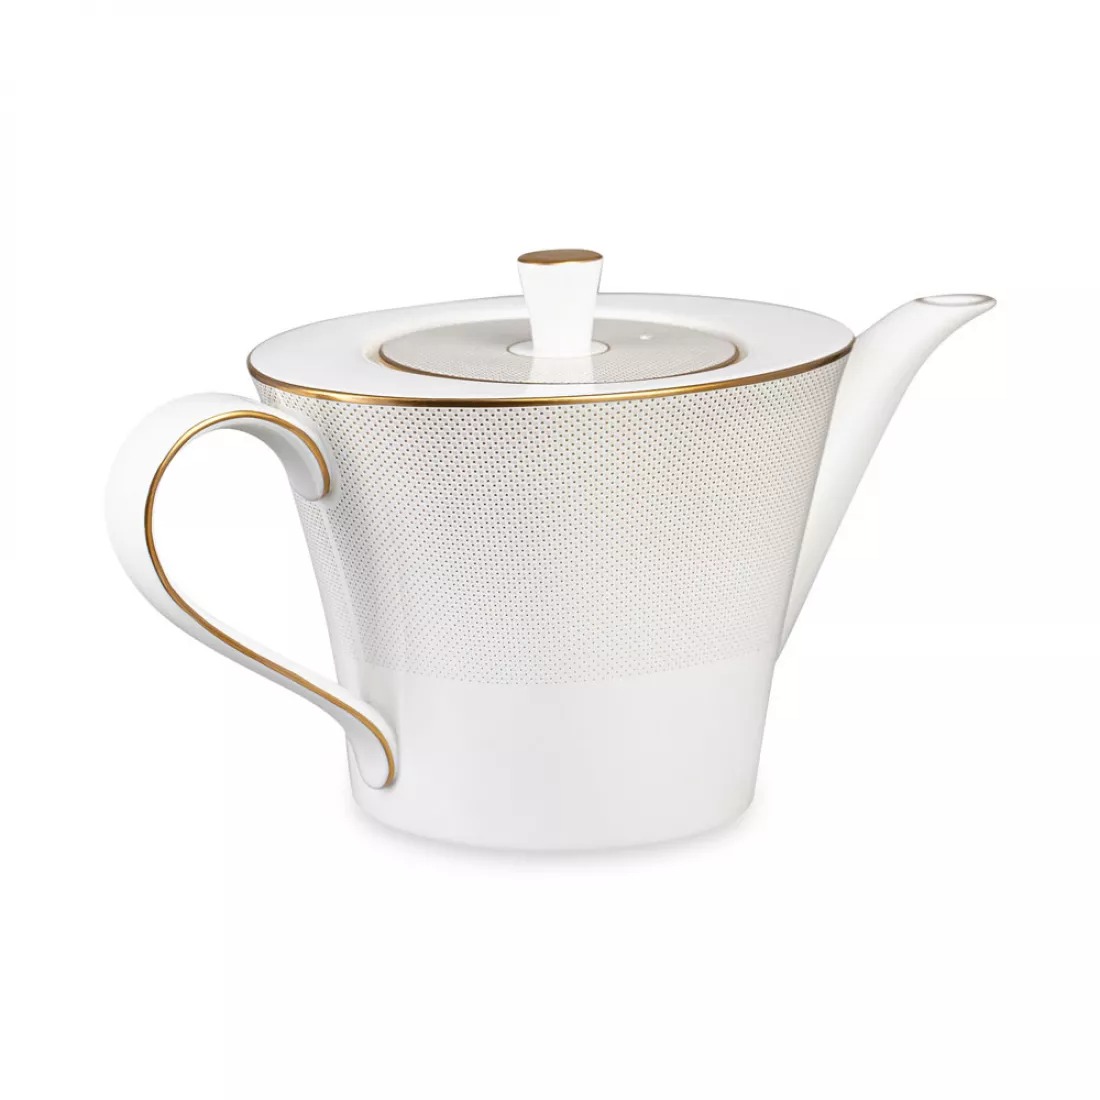 Сервиз чайный Narumi Золотая паутина на 6 персон 21 предмет, фарфор костяной, цвет белый - фото 3